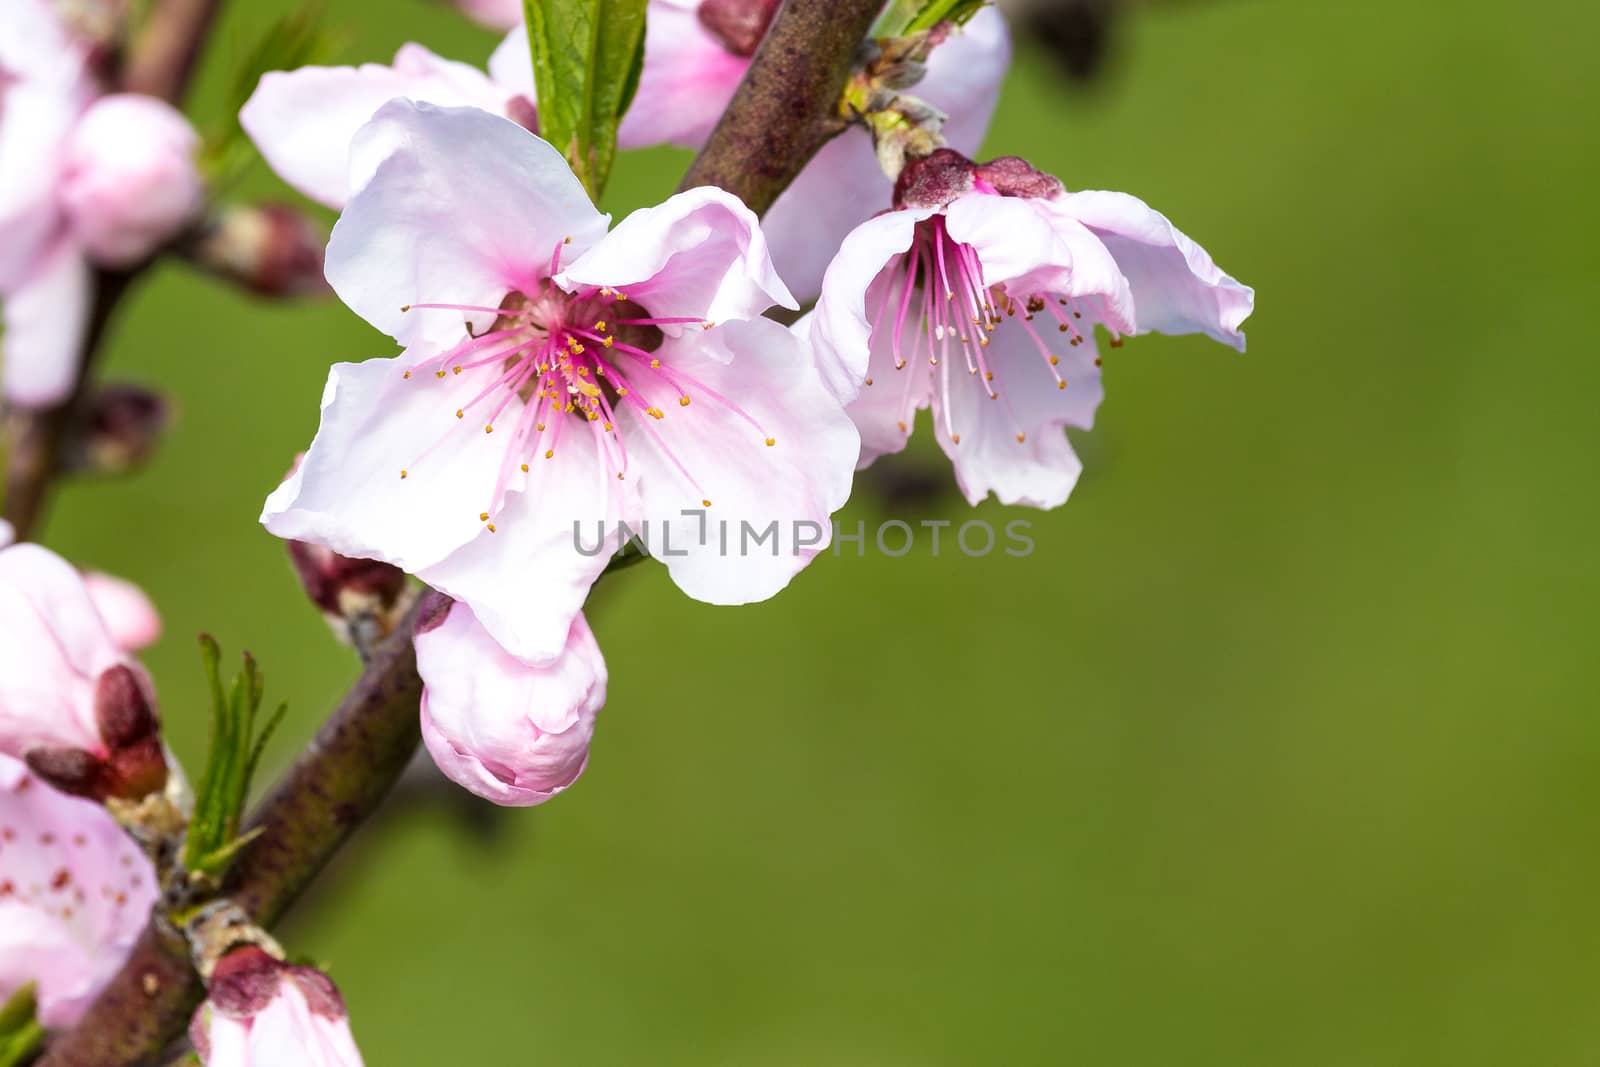 Peach blossom by alanstix64